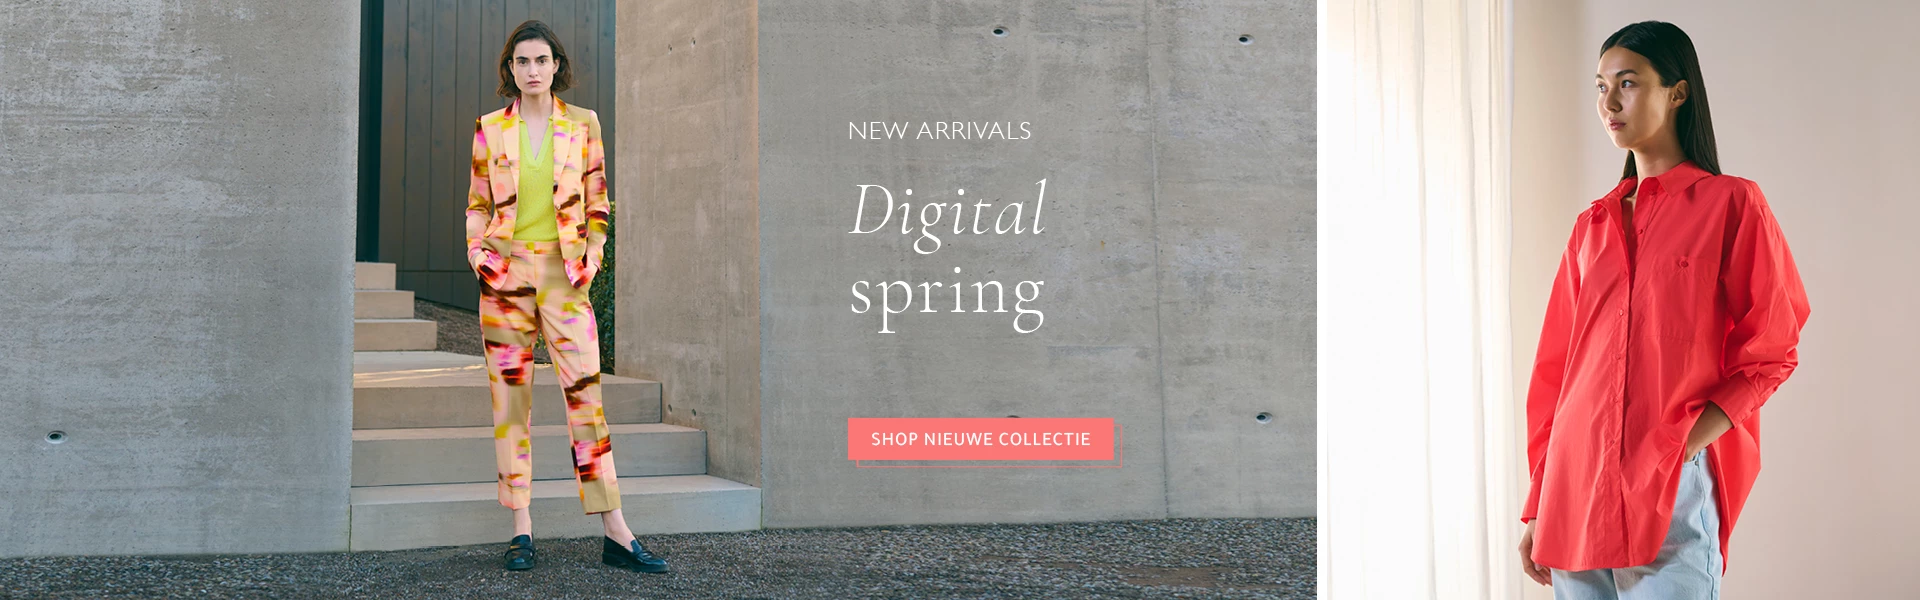 new arrivals - digital spring